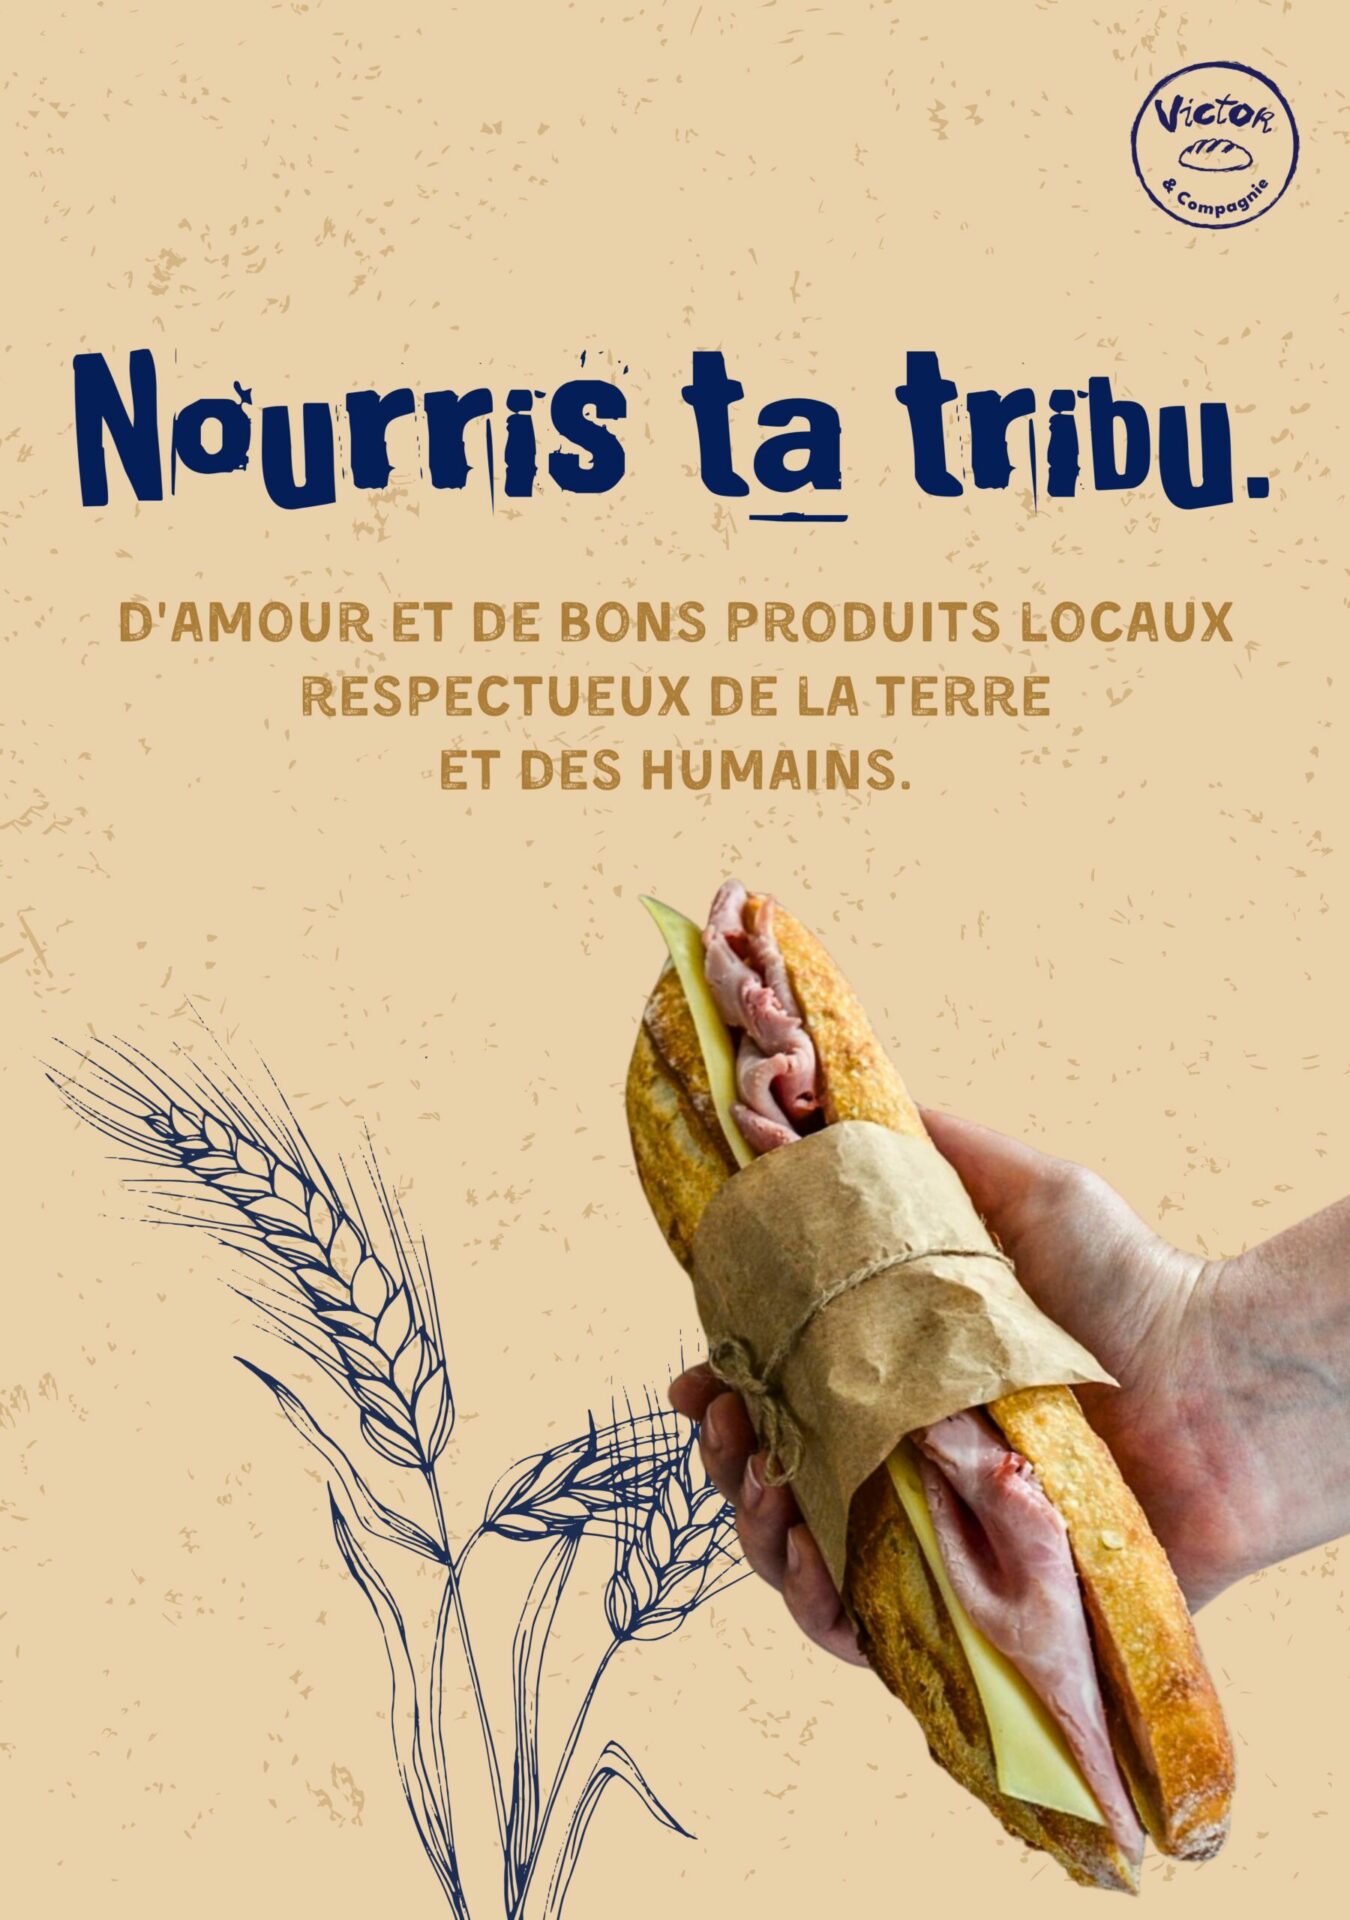 une main qui tient un sandwich jambon beurre accompagné du texte "nourris ta tribu"